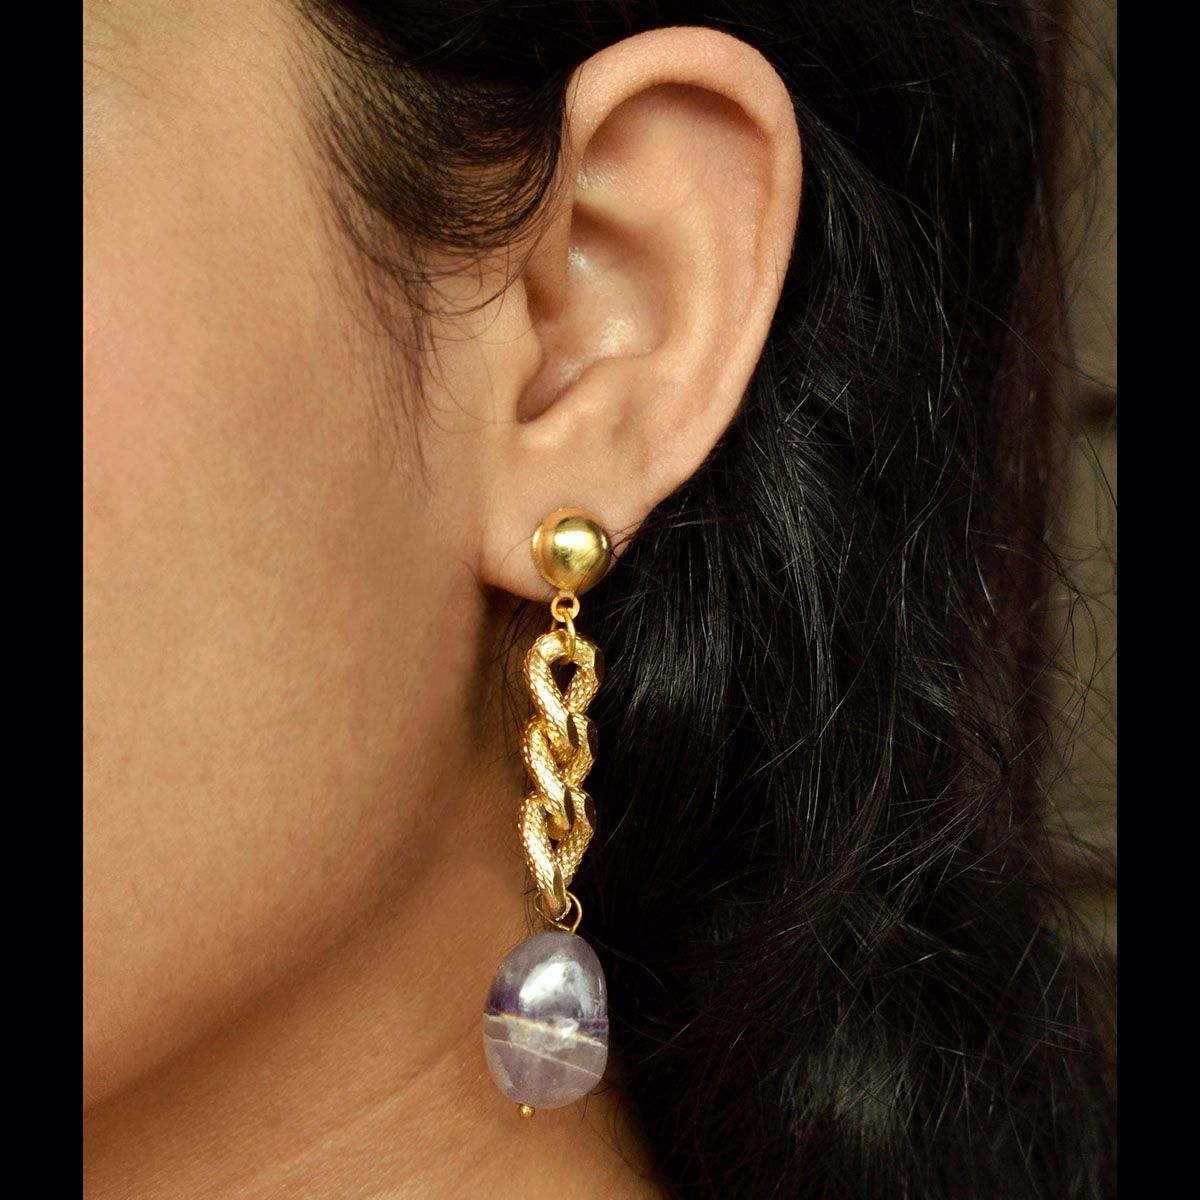 Buy Seakuur Cuff Chain Earrings for WomenCuffs Tassel Earrings Butterfly  Ear Cuff Droping Chain Stud Earrings for Girls Gifts Metal nc at  Amazonin